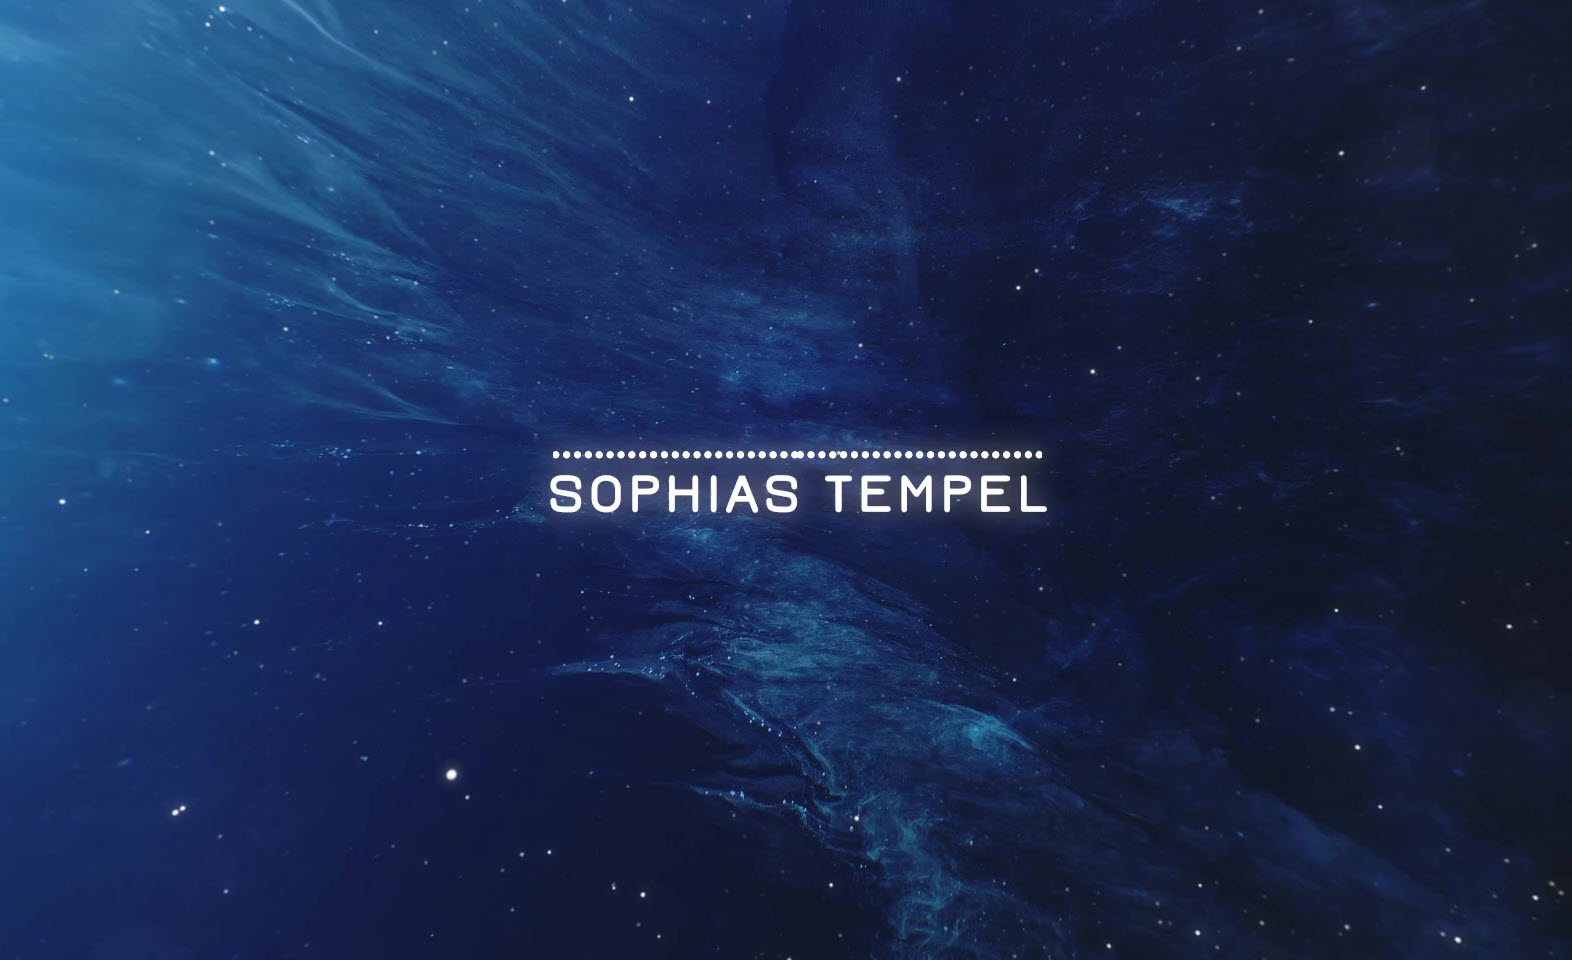 Der Tempel der Sophia | Segnung, Heilung, Erkenntnis Deines Quellbewusstseins